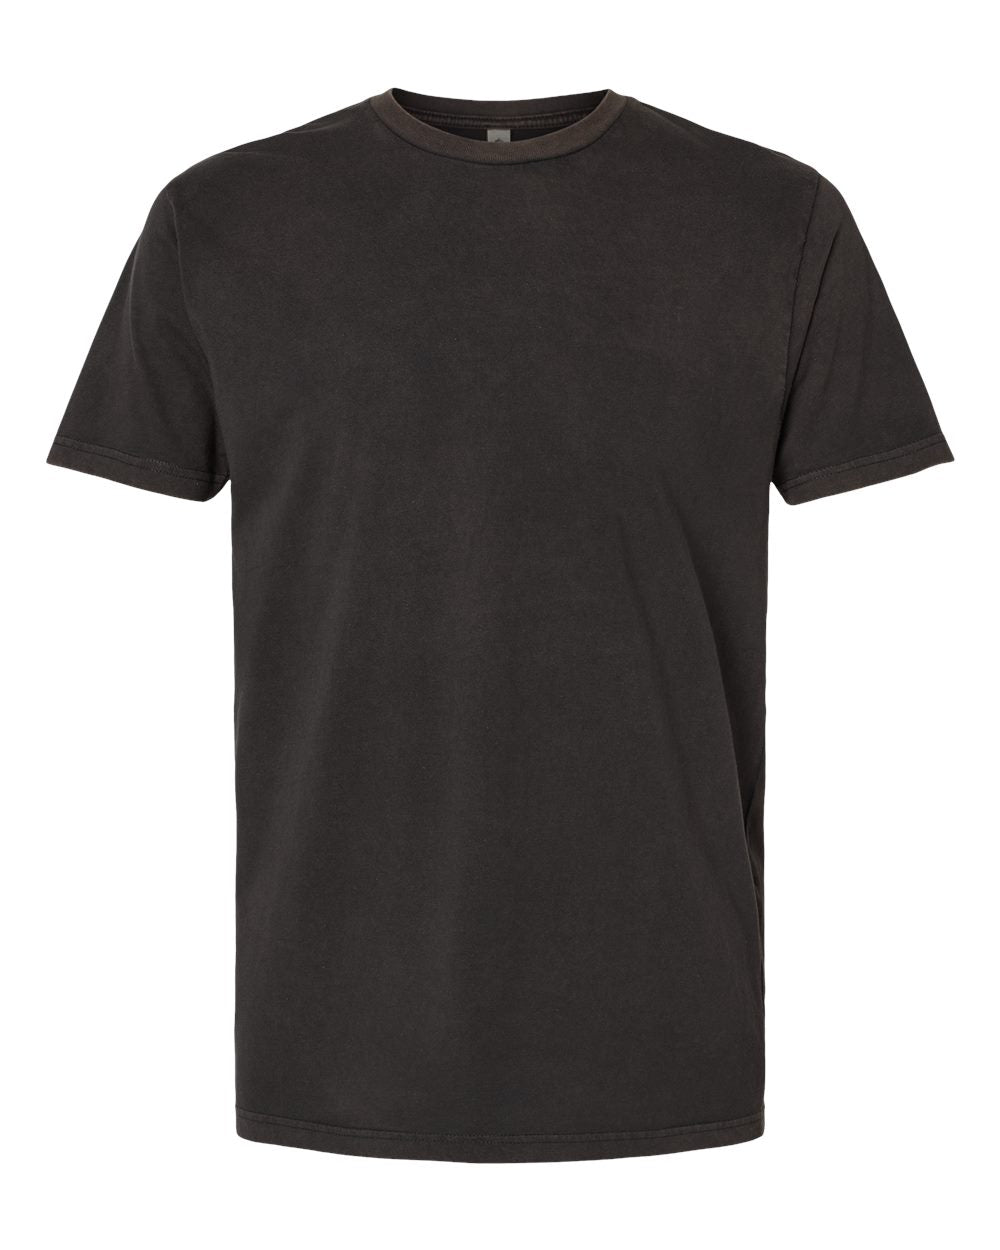 Next Level - Unisex Soft Wash T-Shirt - 3600SW